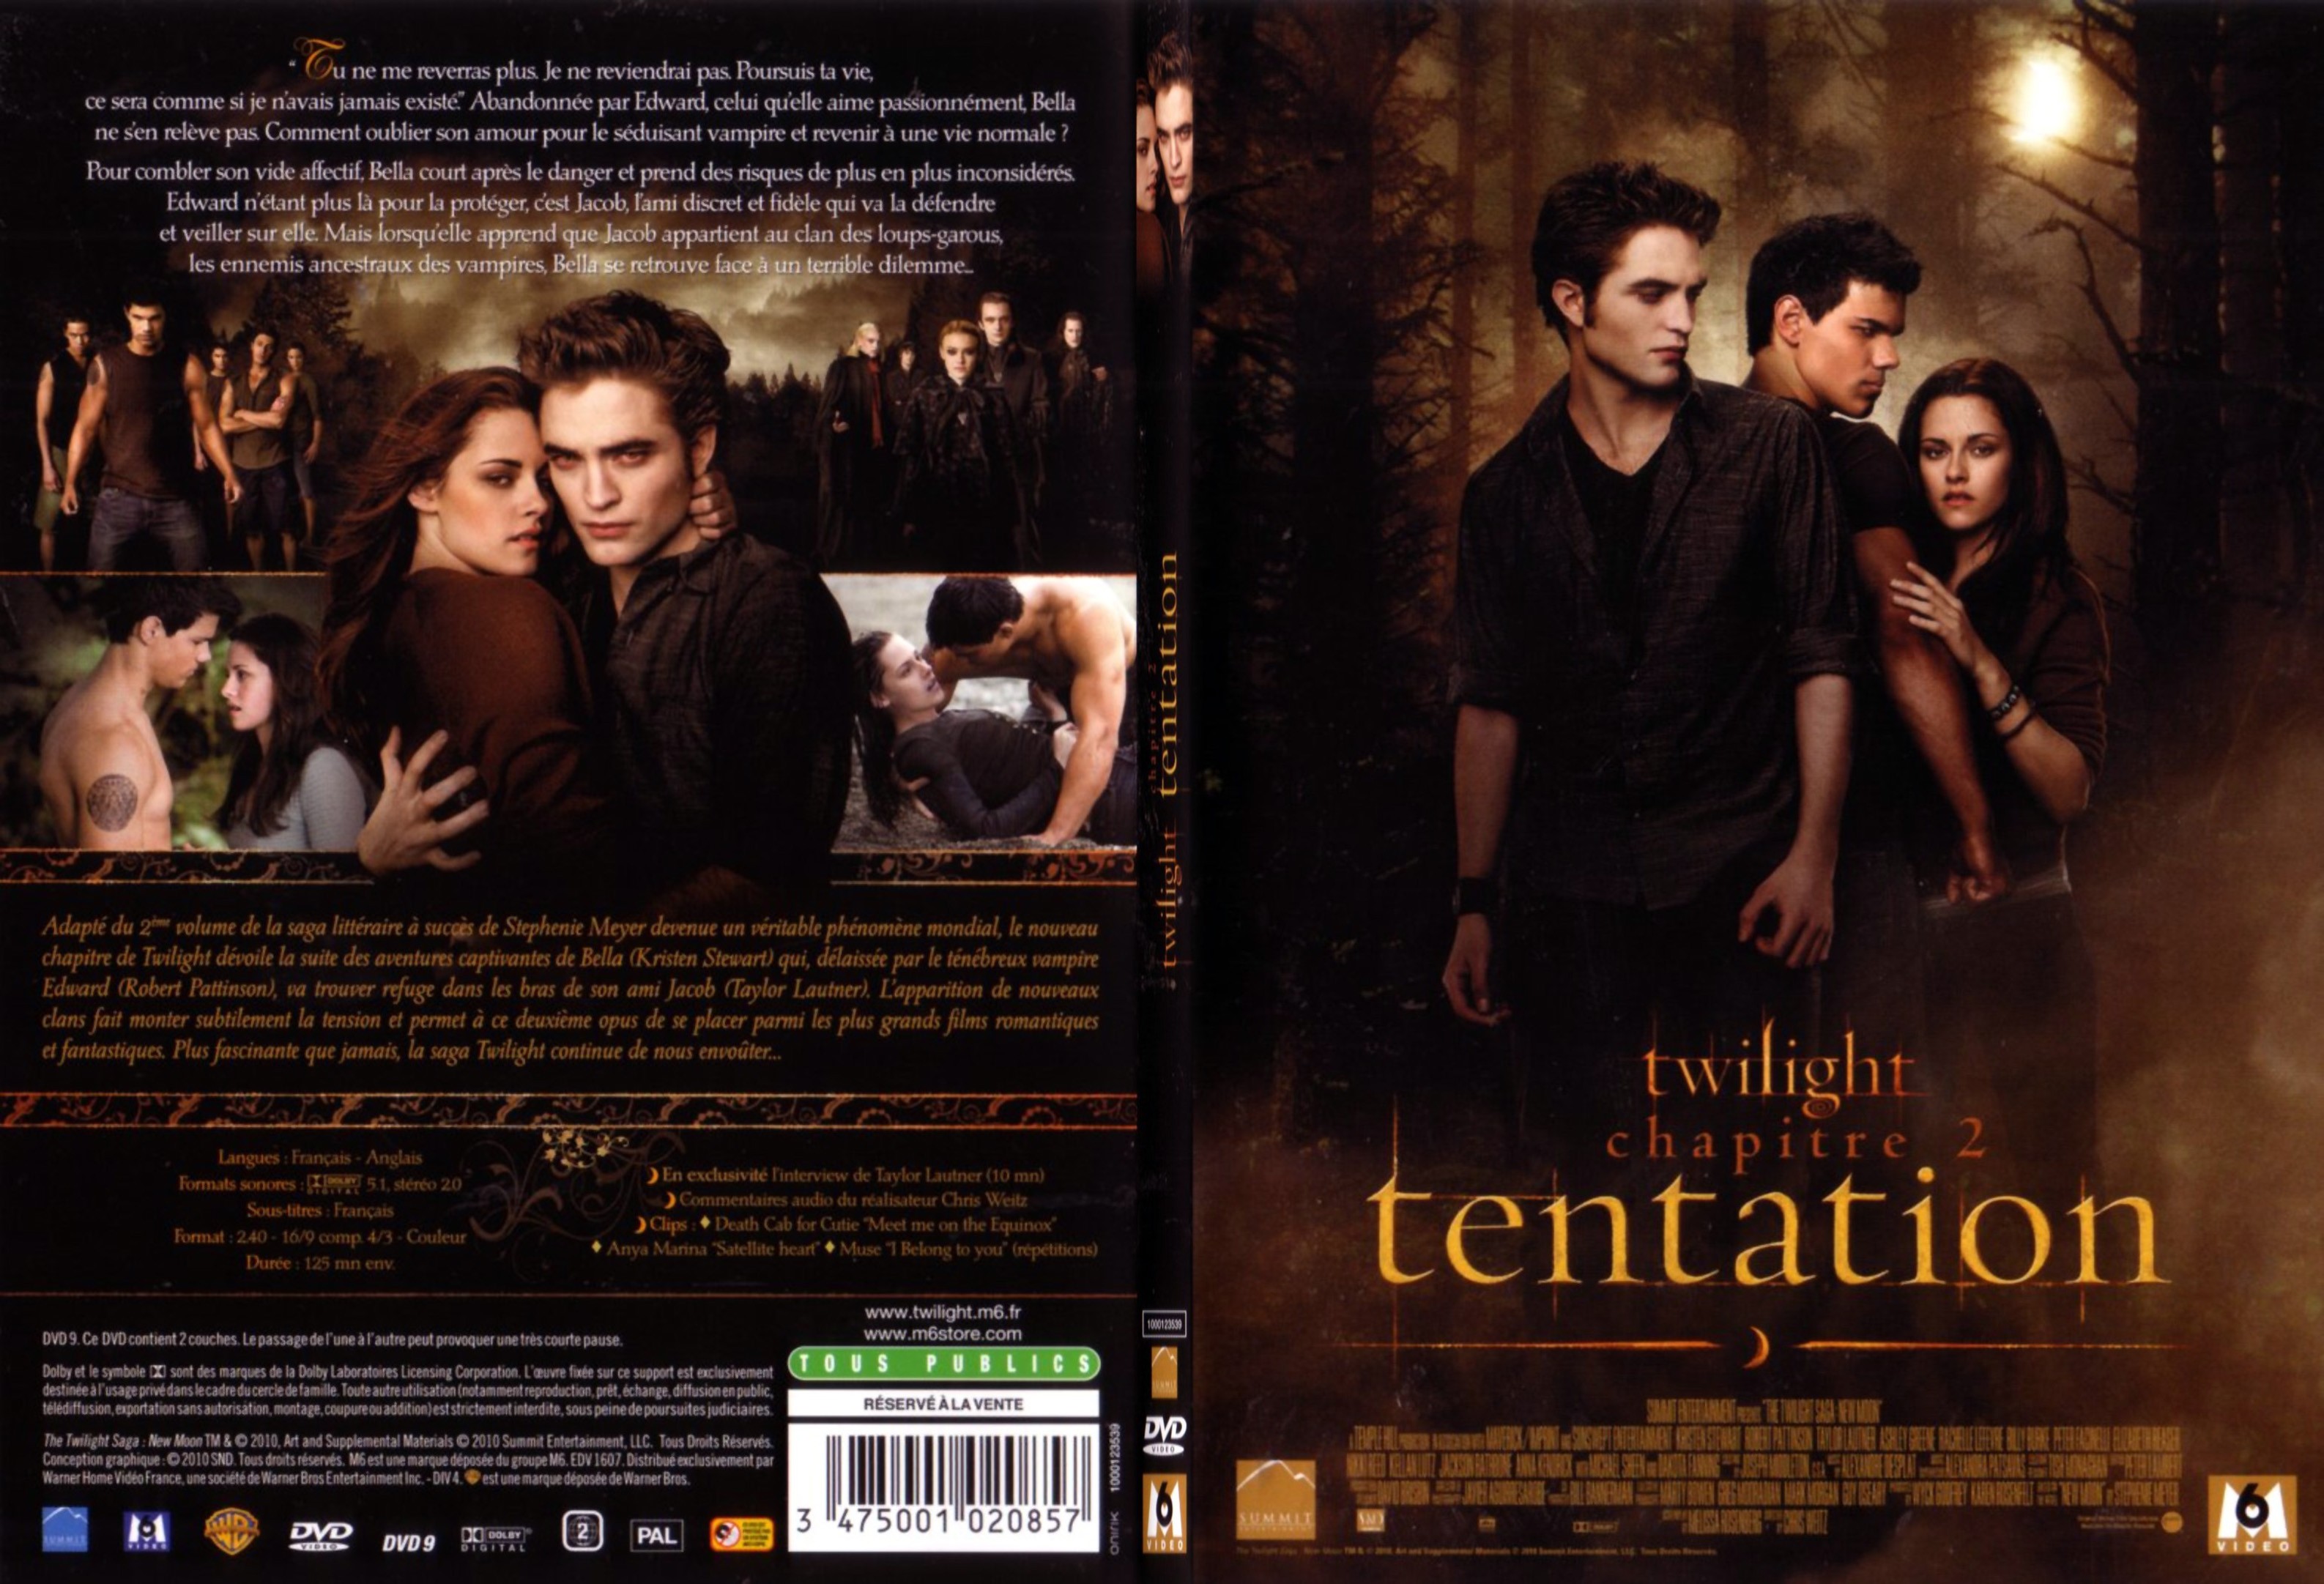 Jaquette DVD Twilight Chapitre 2 - Tentation - SLIM